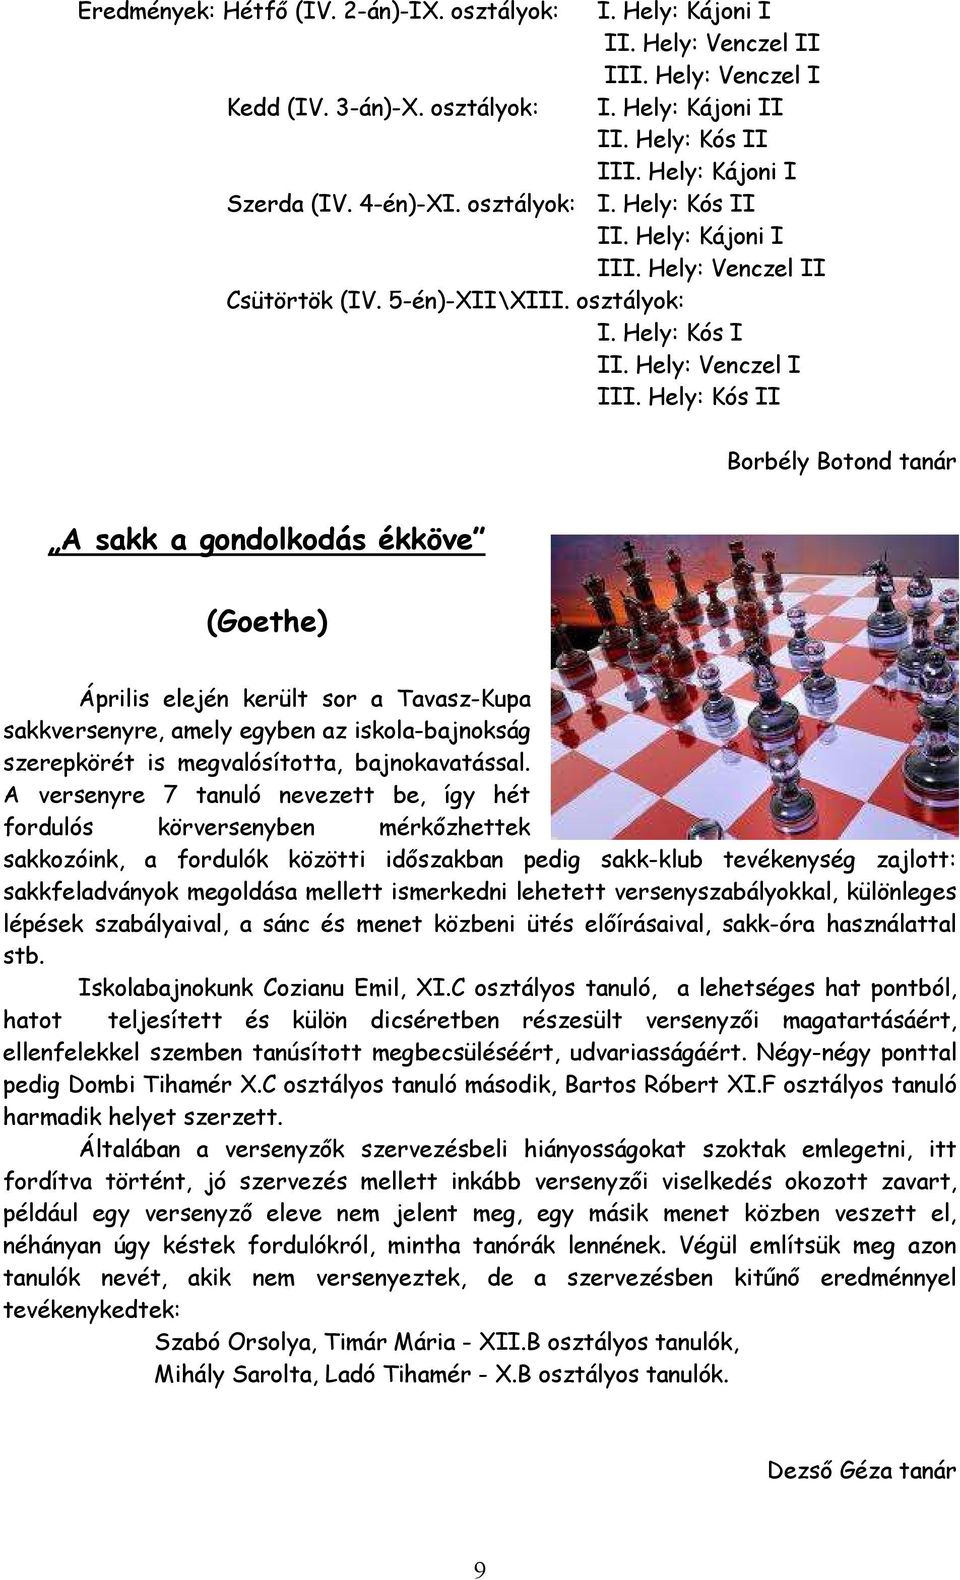 Hely: Kós II Borbély Botond tanár A sakk a gondolkodás ékköve (Goethe) Április elején került sor a Tavasz-Kupa sakkversenyre, amely egyben az iskola-bajnokság szerepkörét is megvalósította,